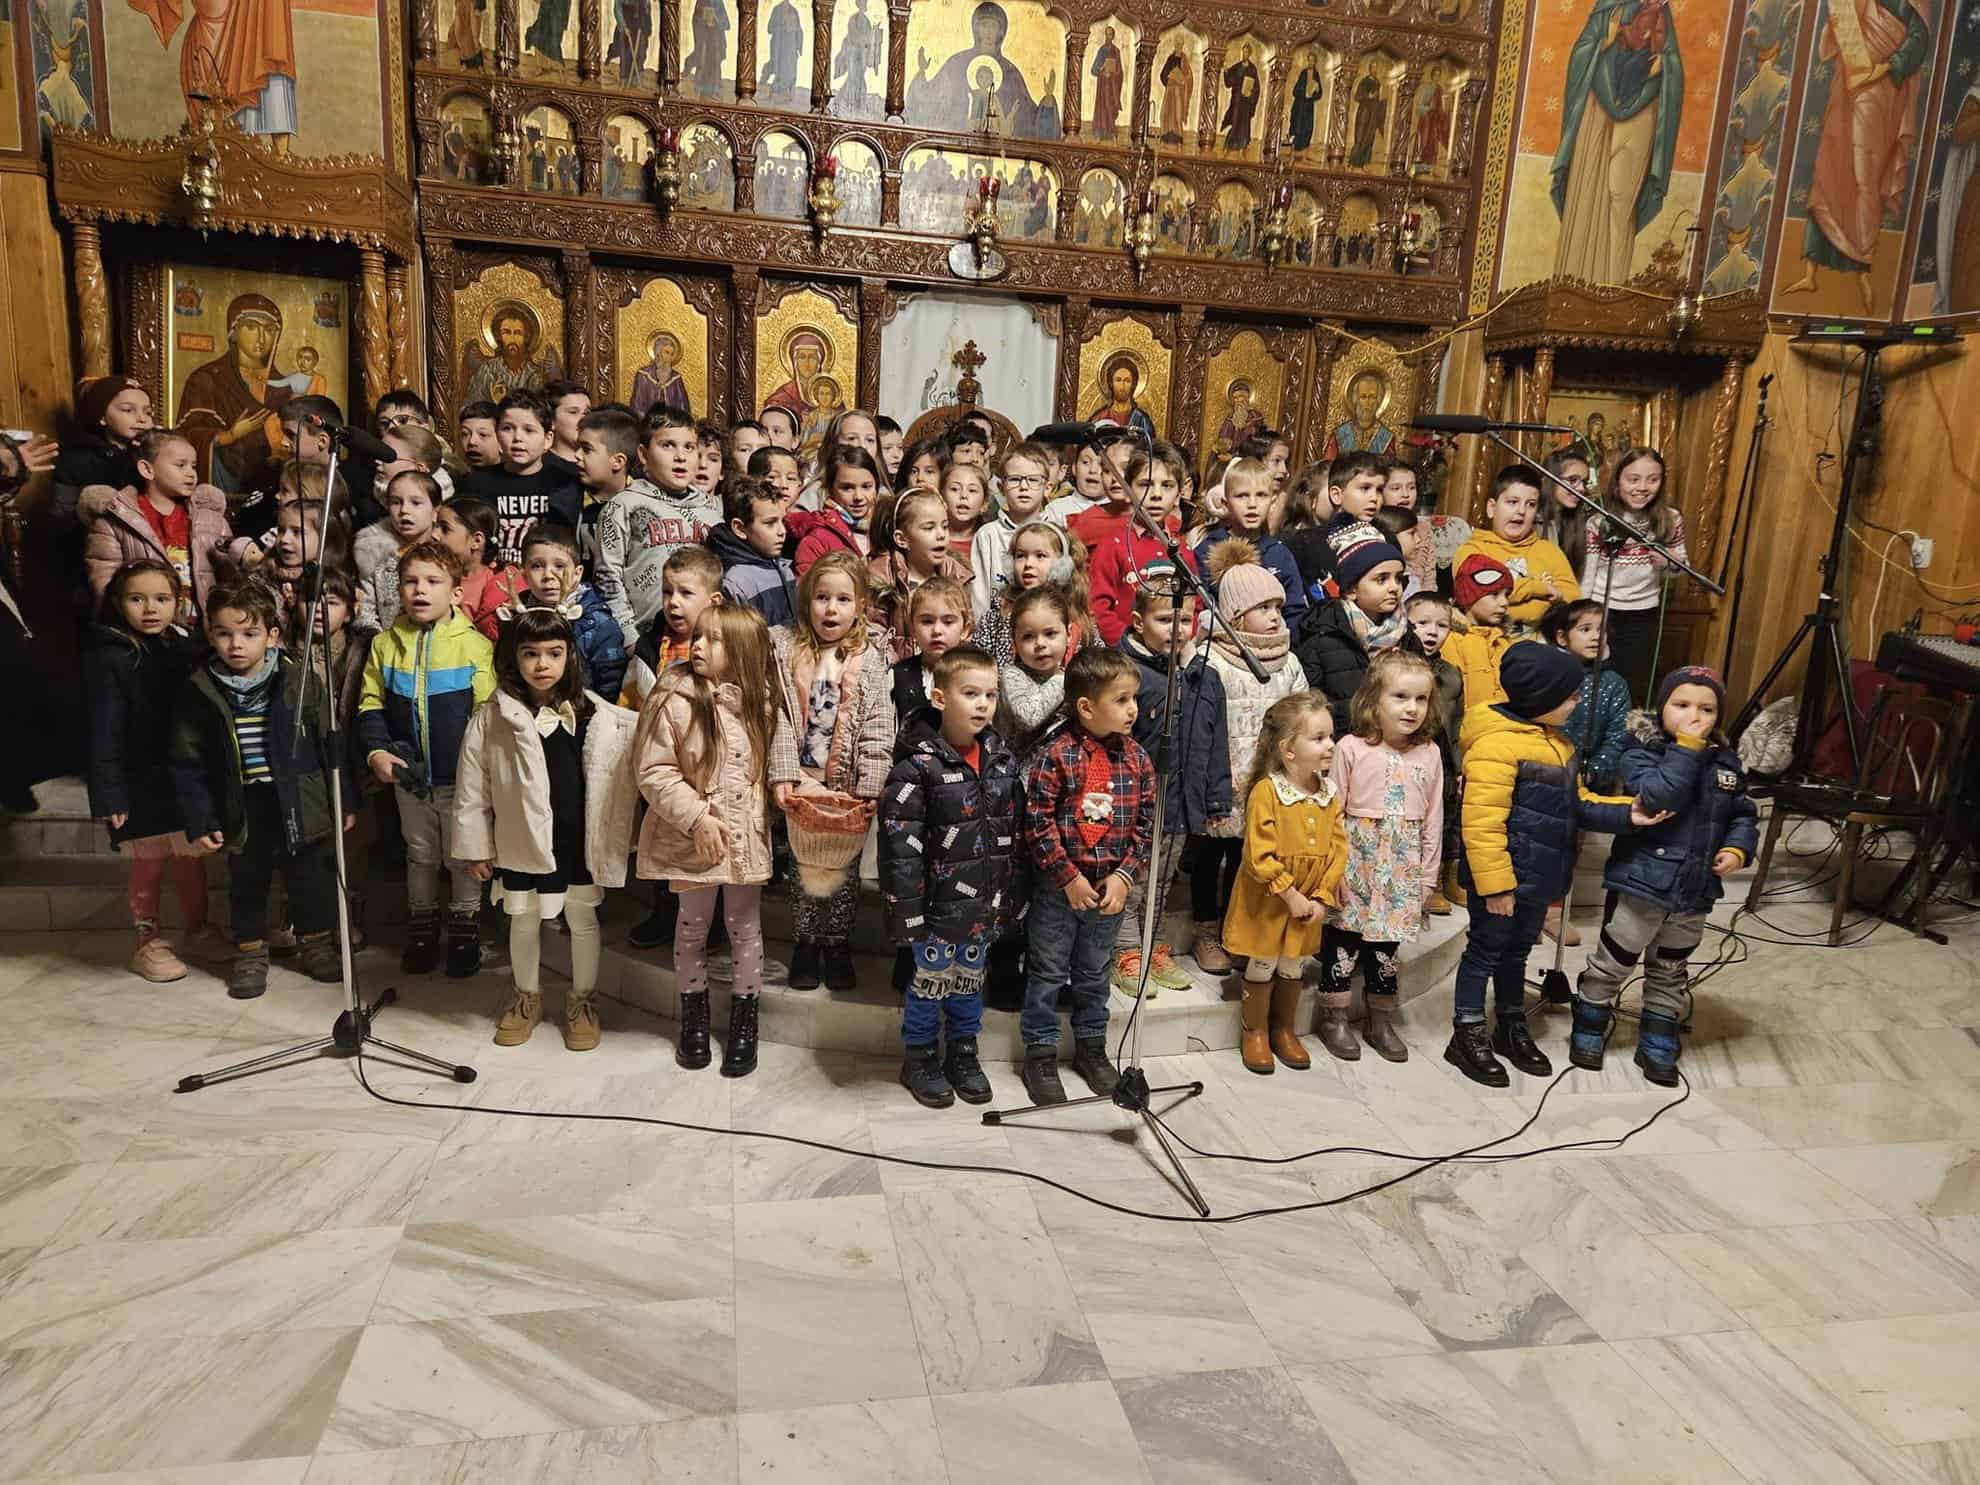 biserica ortodoxă din cisnădie a oferit daruri copiilor defavorizați de sfântul nicolae (foto)